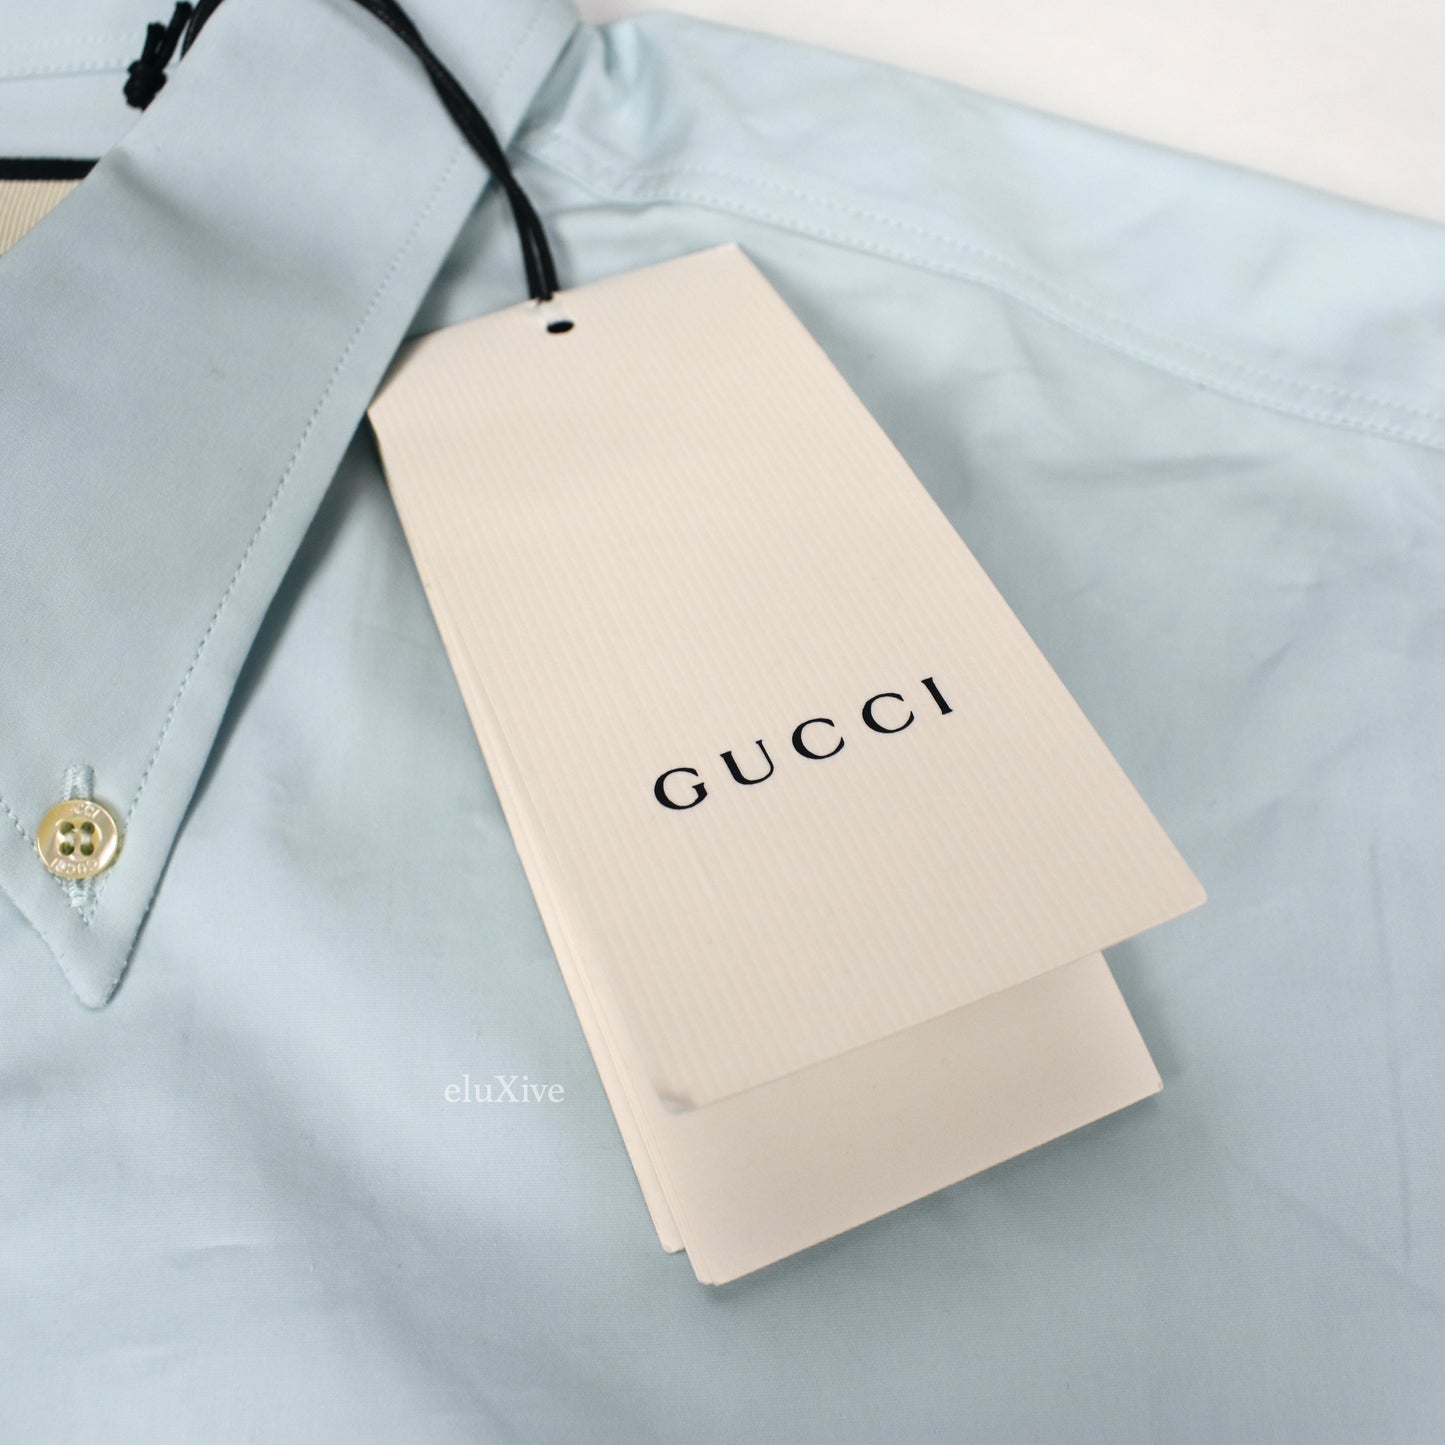 Gucci - Light Blue G.G. Logo S/S Button Down Shirt